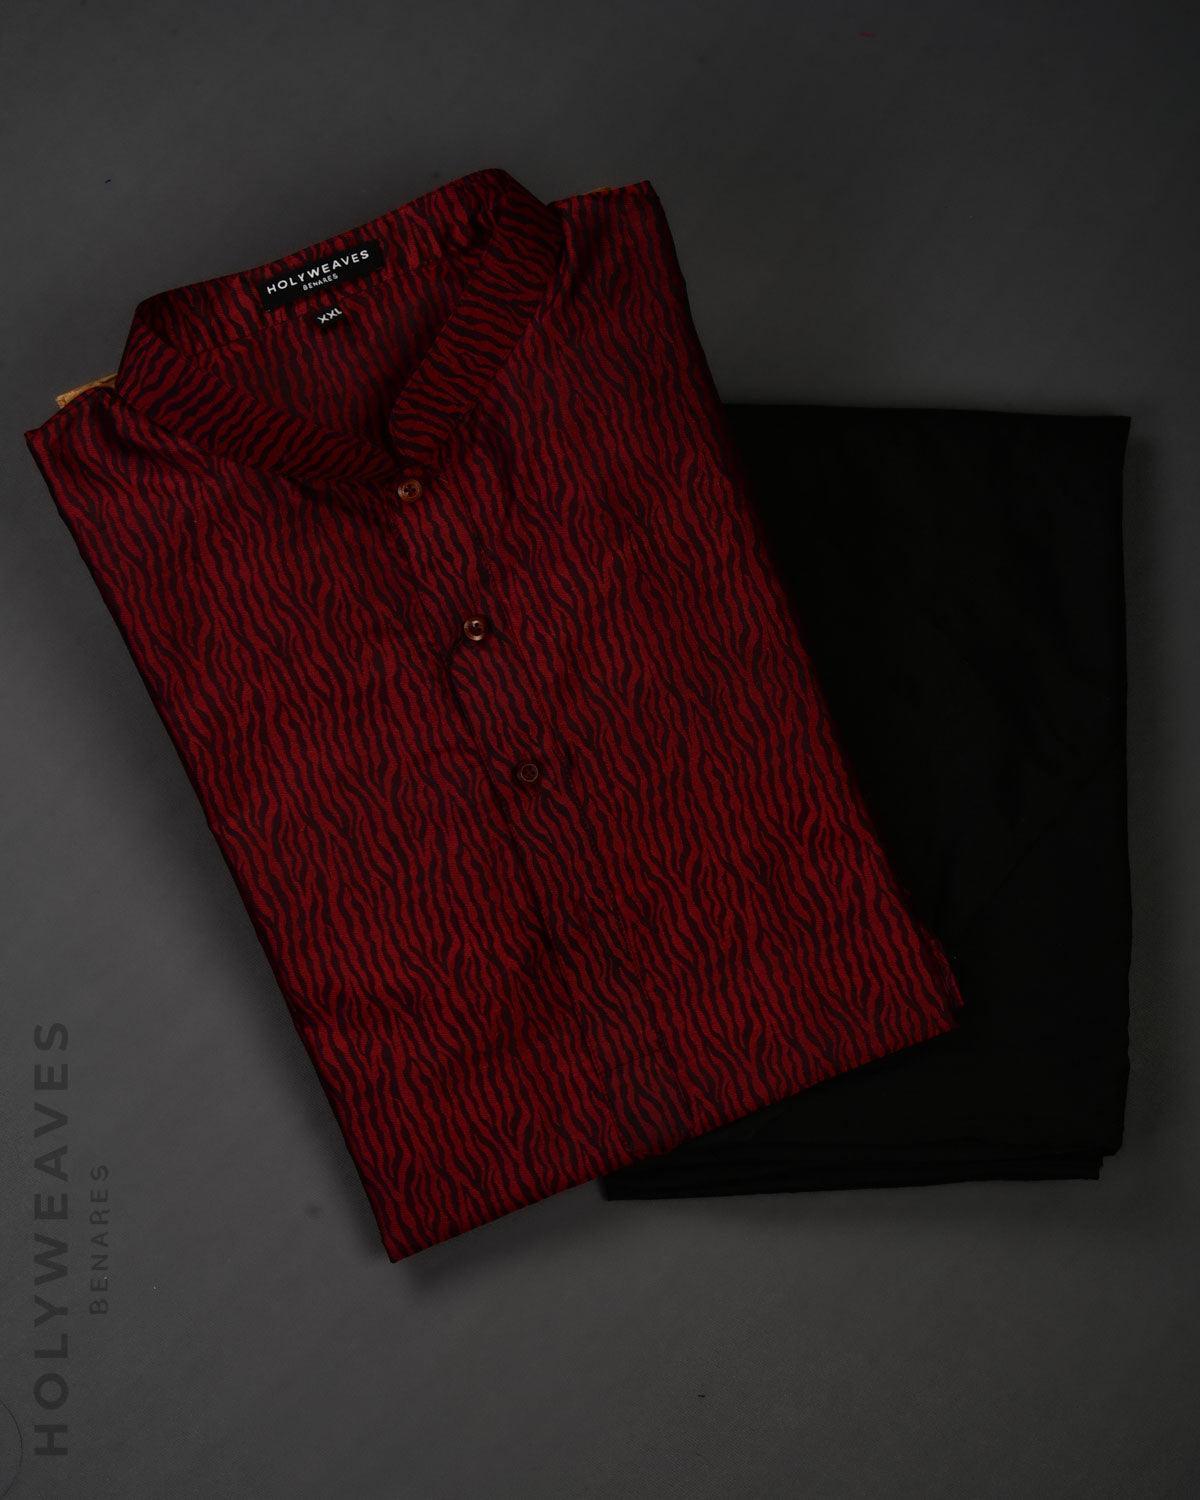 Red on Black Banarasi Tiger Stripes Tanchoi Handwoven Katan Silk Mens Kurta Pyjama - By HolyWeaves, Benares